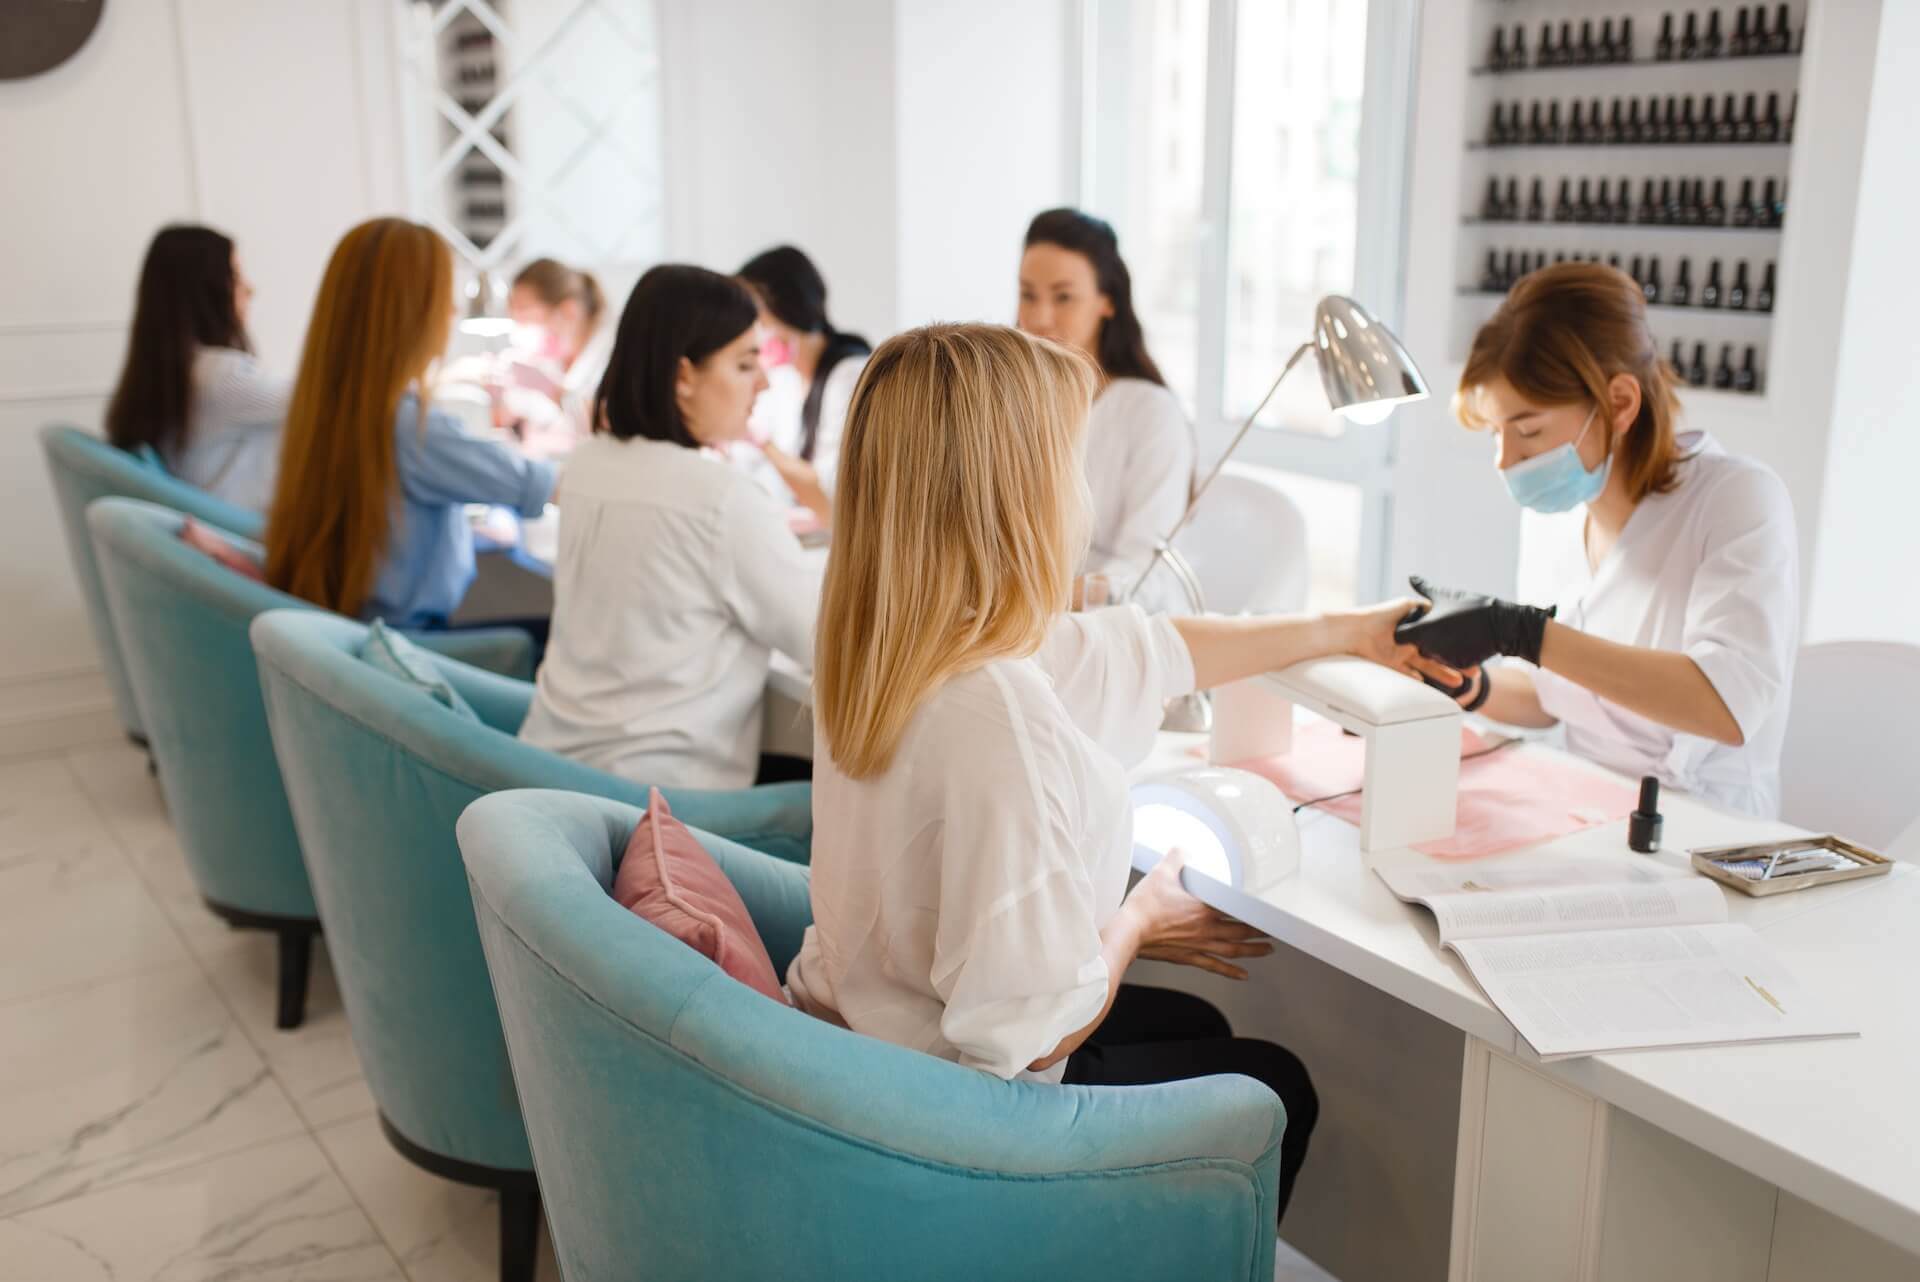 Women in a nail salon